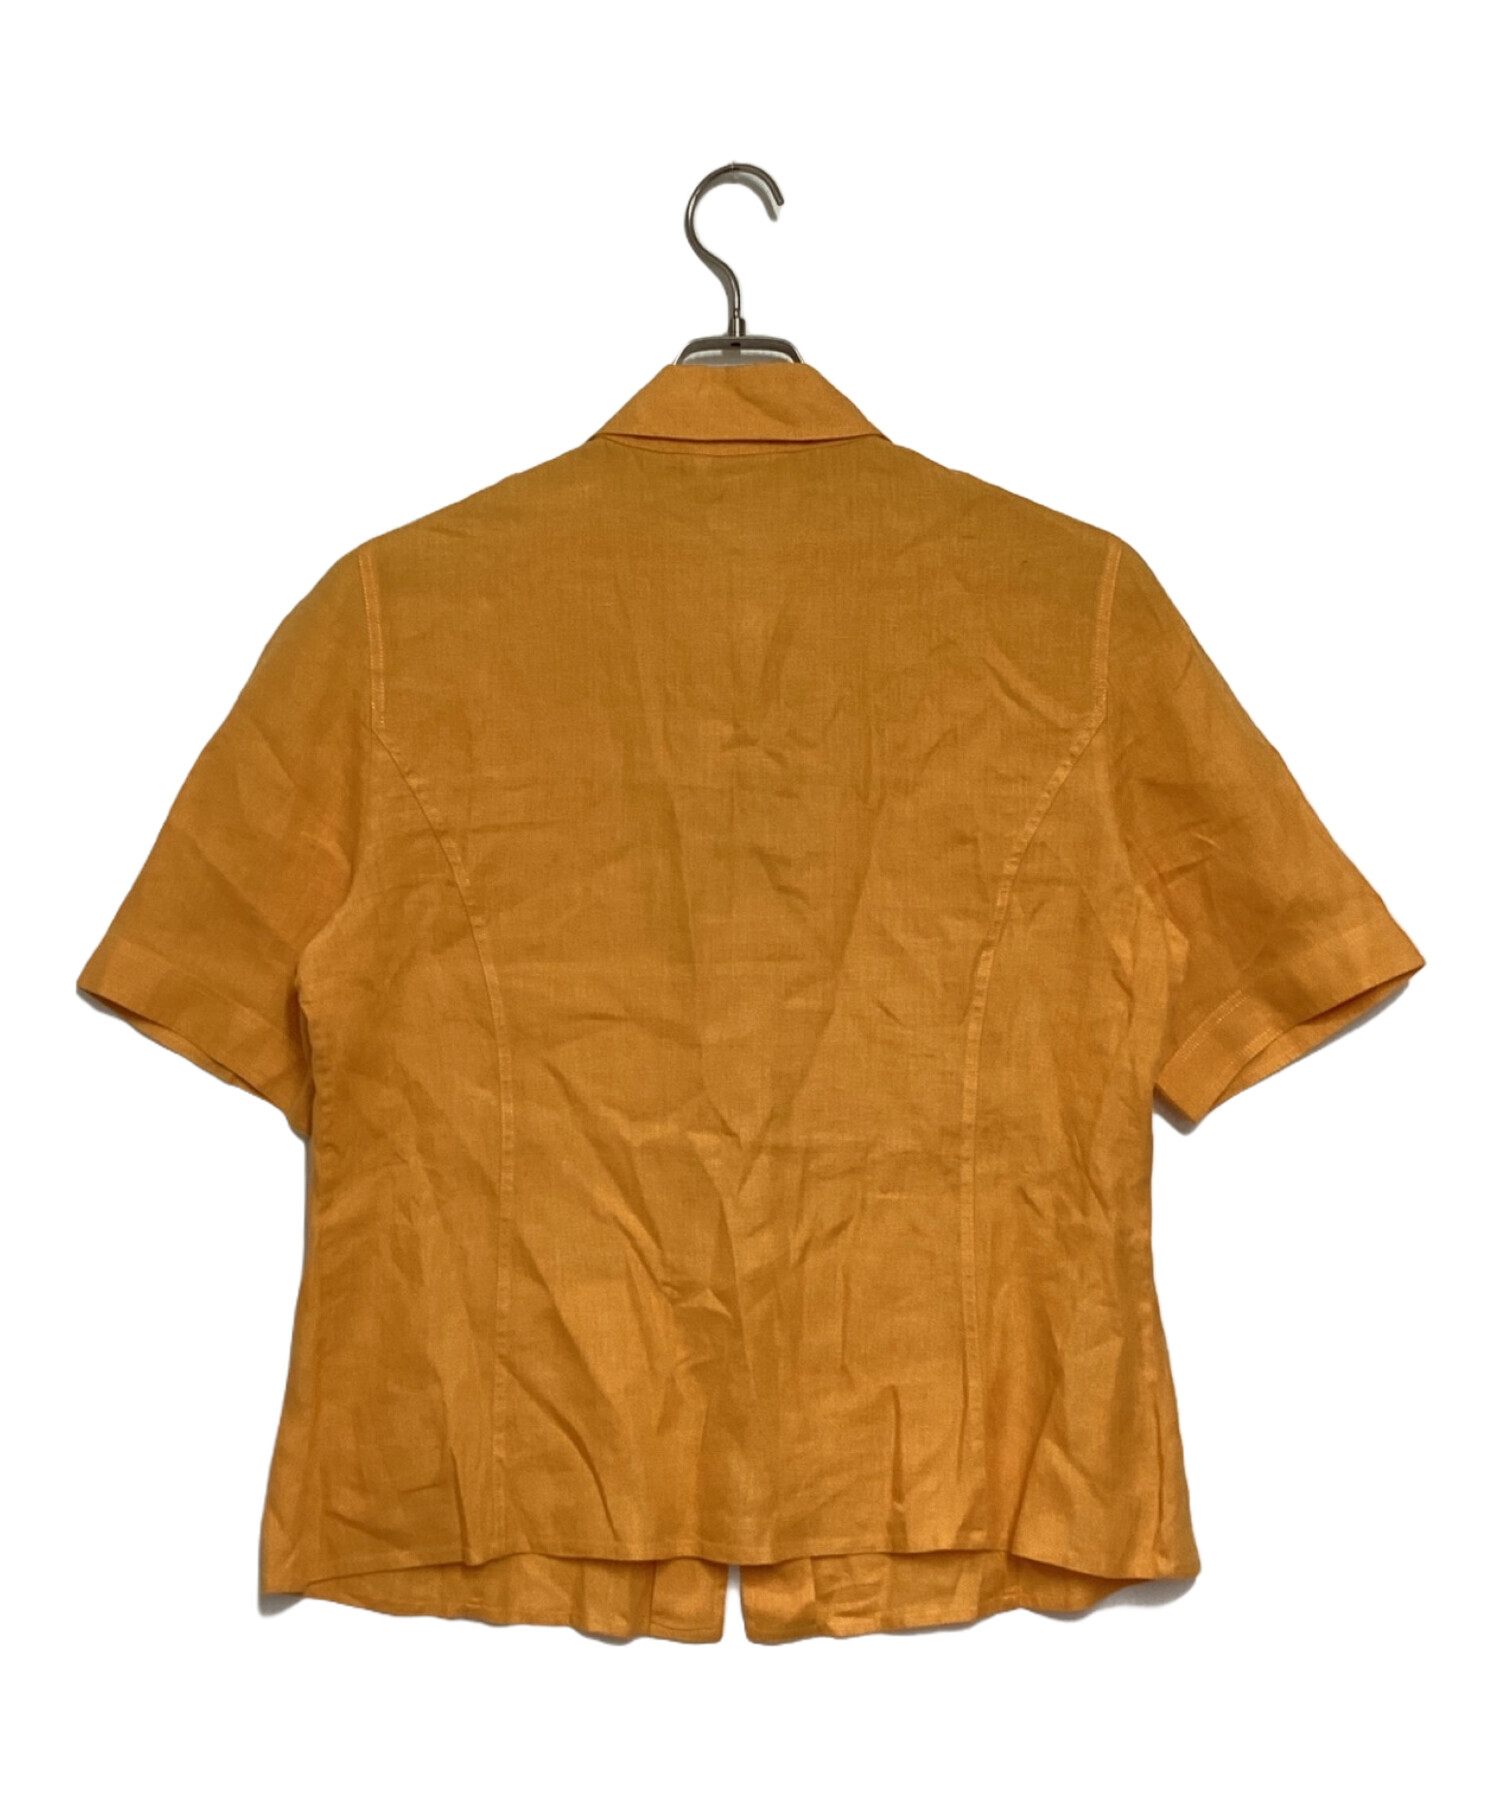 中古・古着通販】HERMES (エルメス) リネン半袖シャツ オレンジ サイズ 